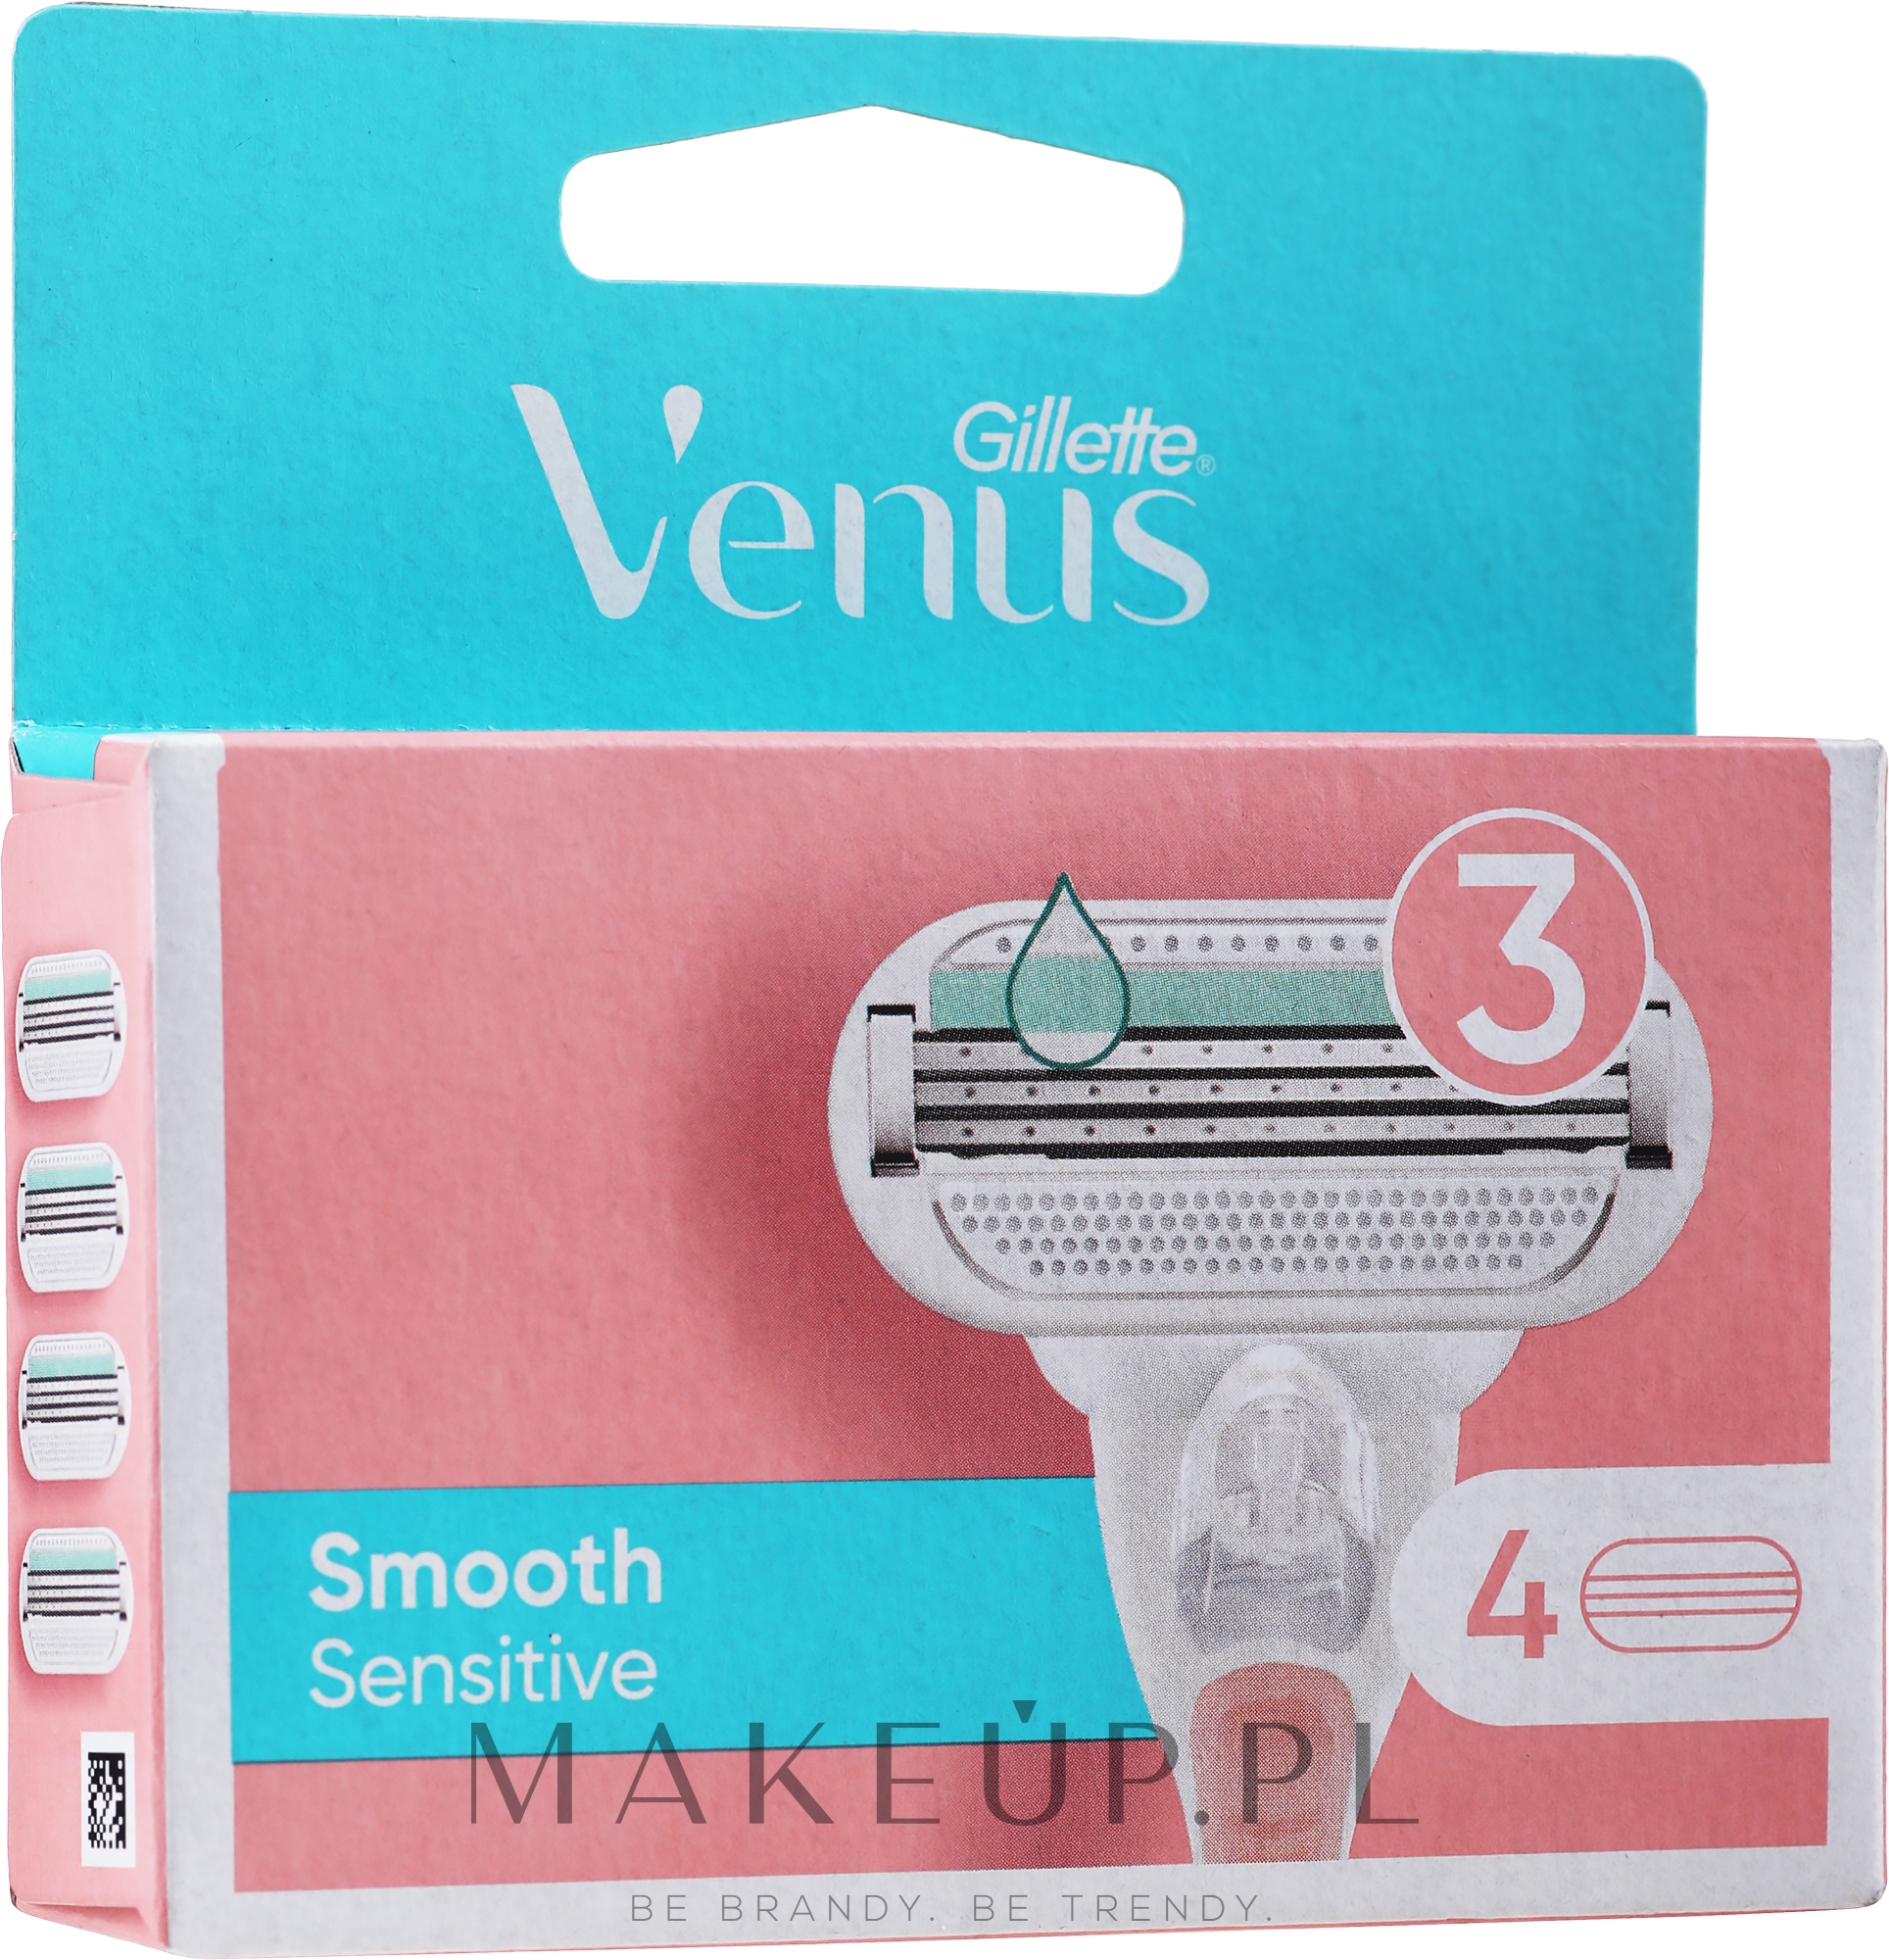 Wymienne ostrza do golenia, 4 szt - Gillette Venus Smooth Sensitive Pink — Zdjęcie 4 szt.